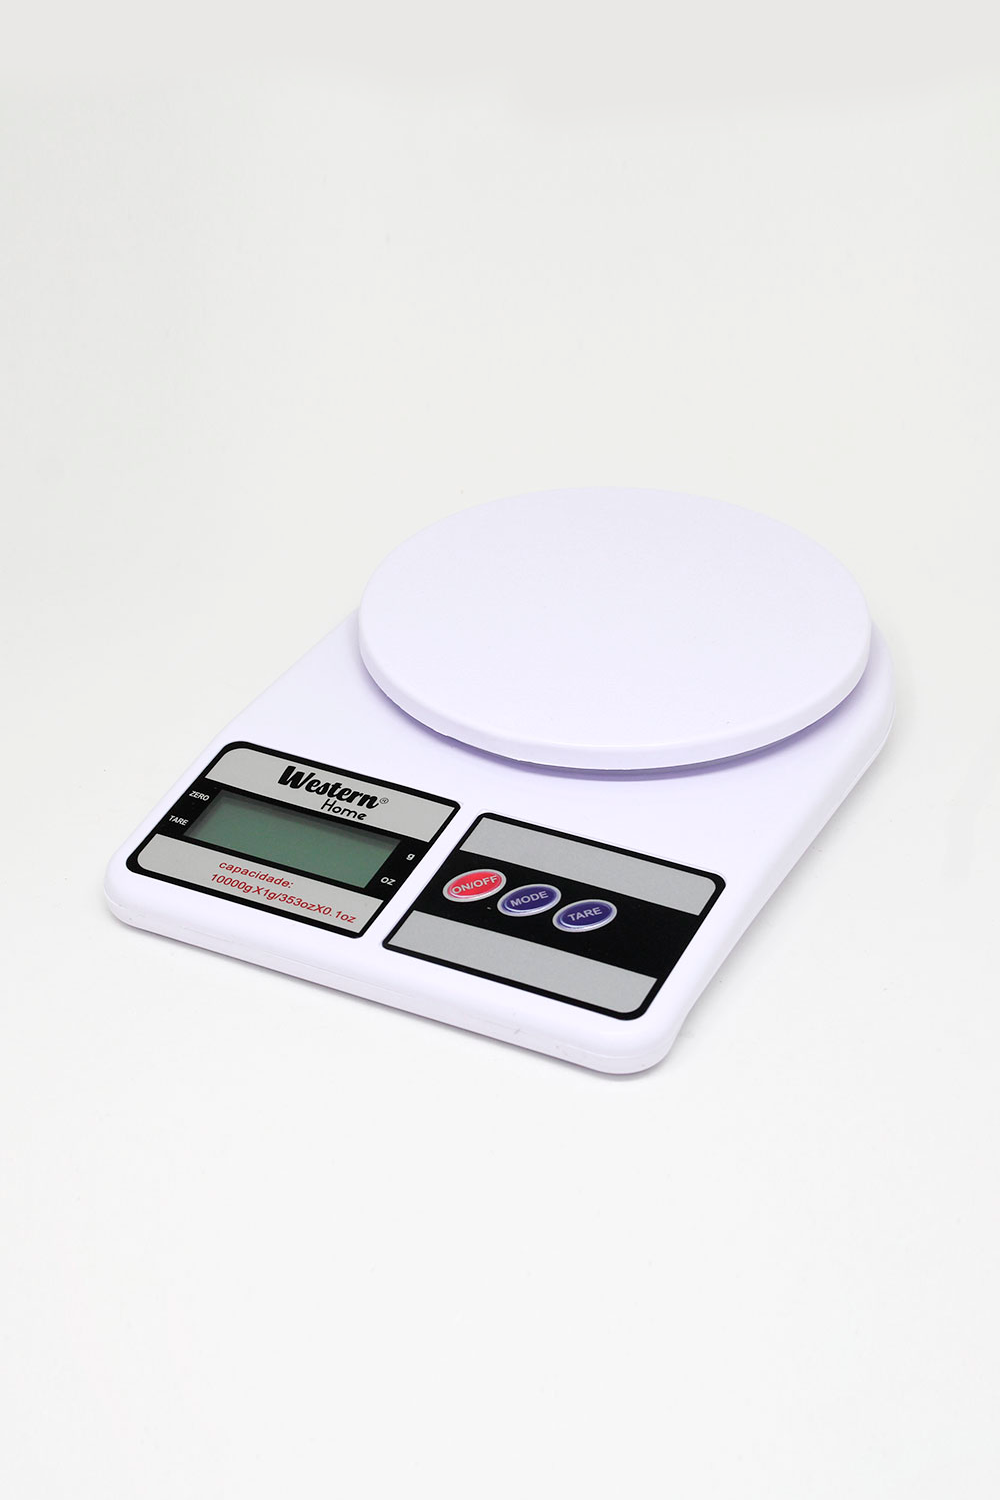 balanca-digital-cozinha-10-kg